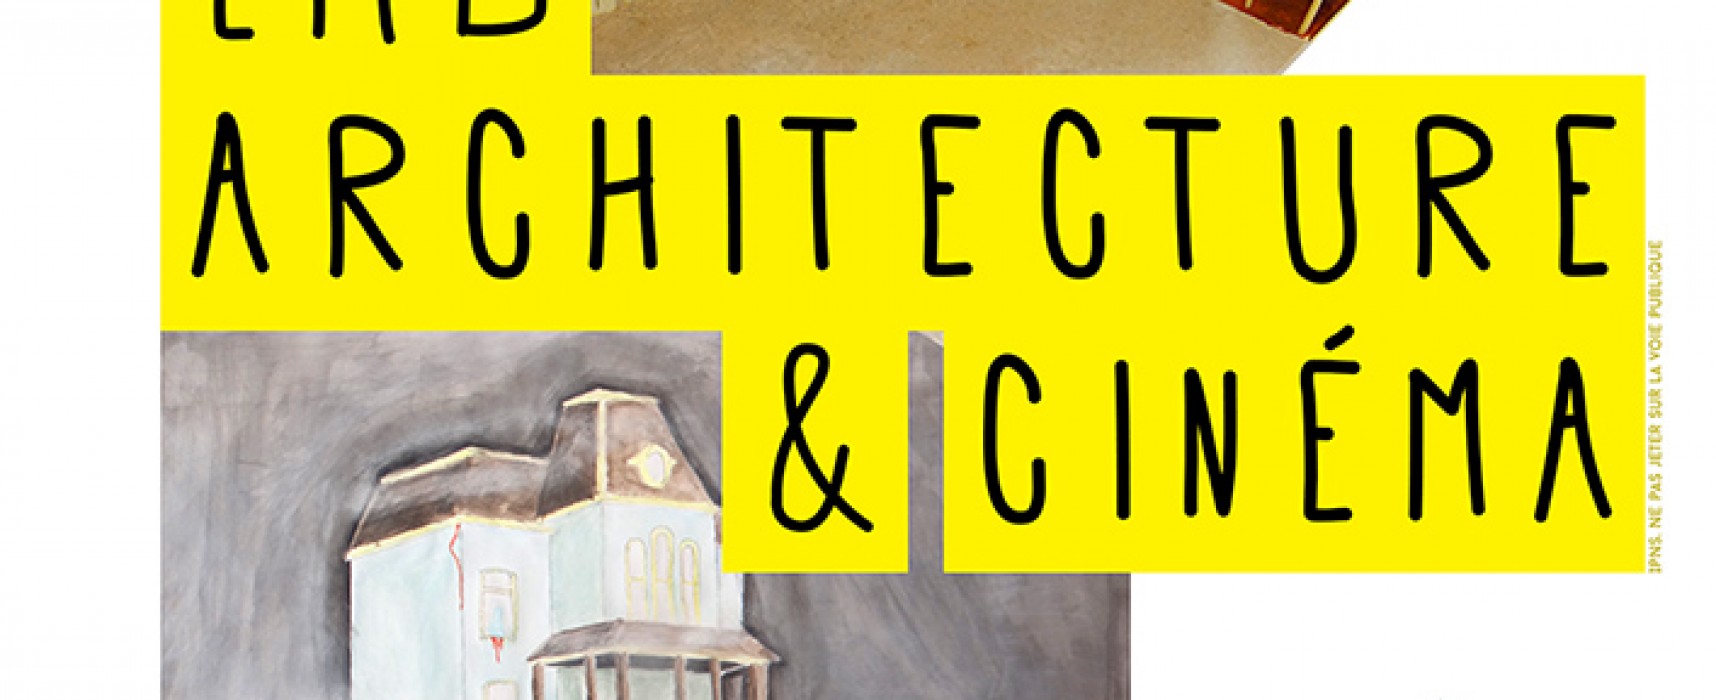 [Exposition] LMB, architecture & cinéma du 11 février au 4 mars 2015